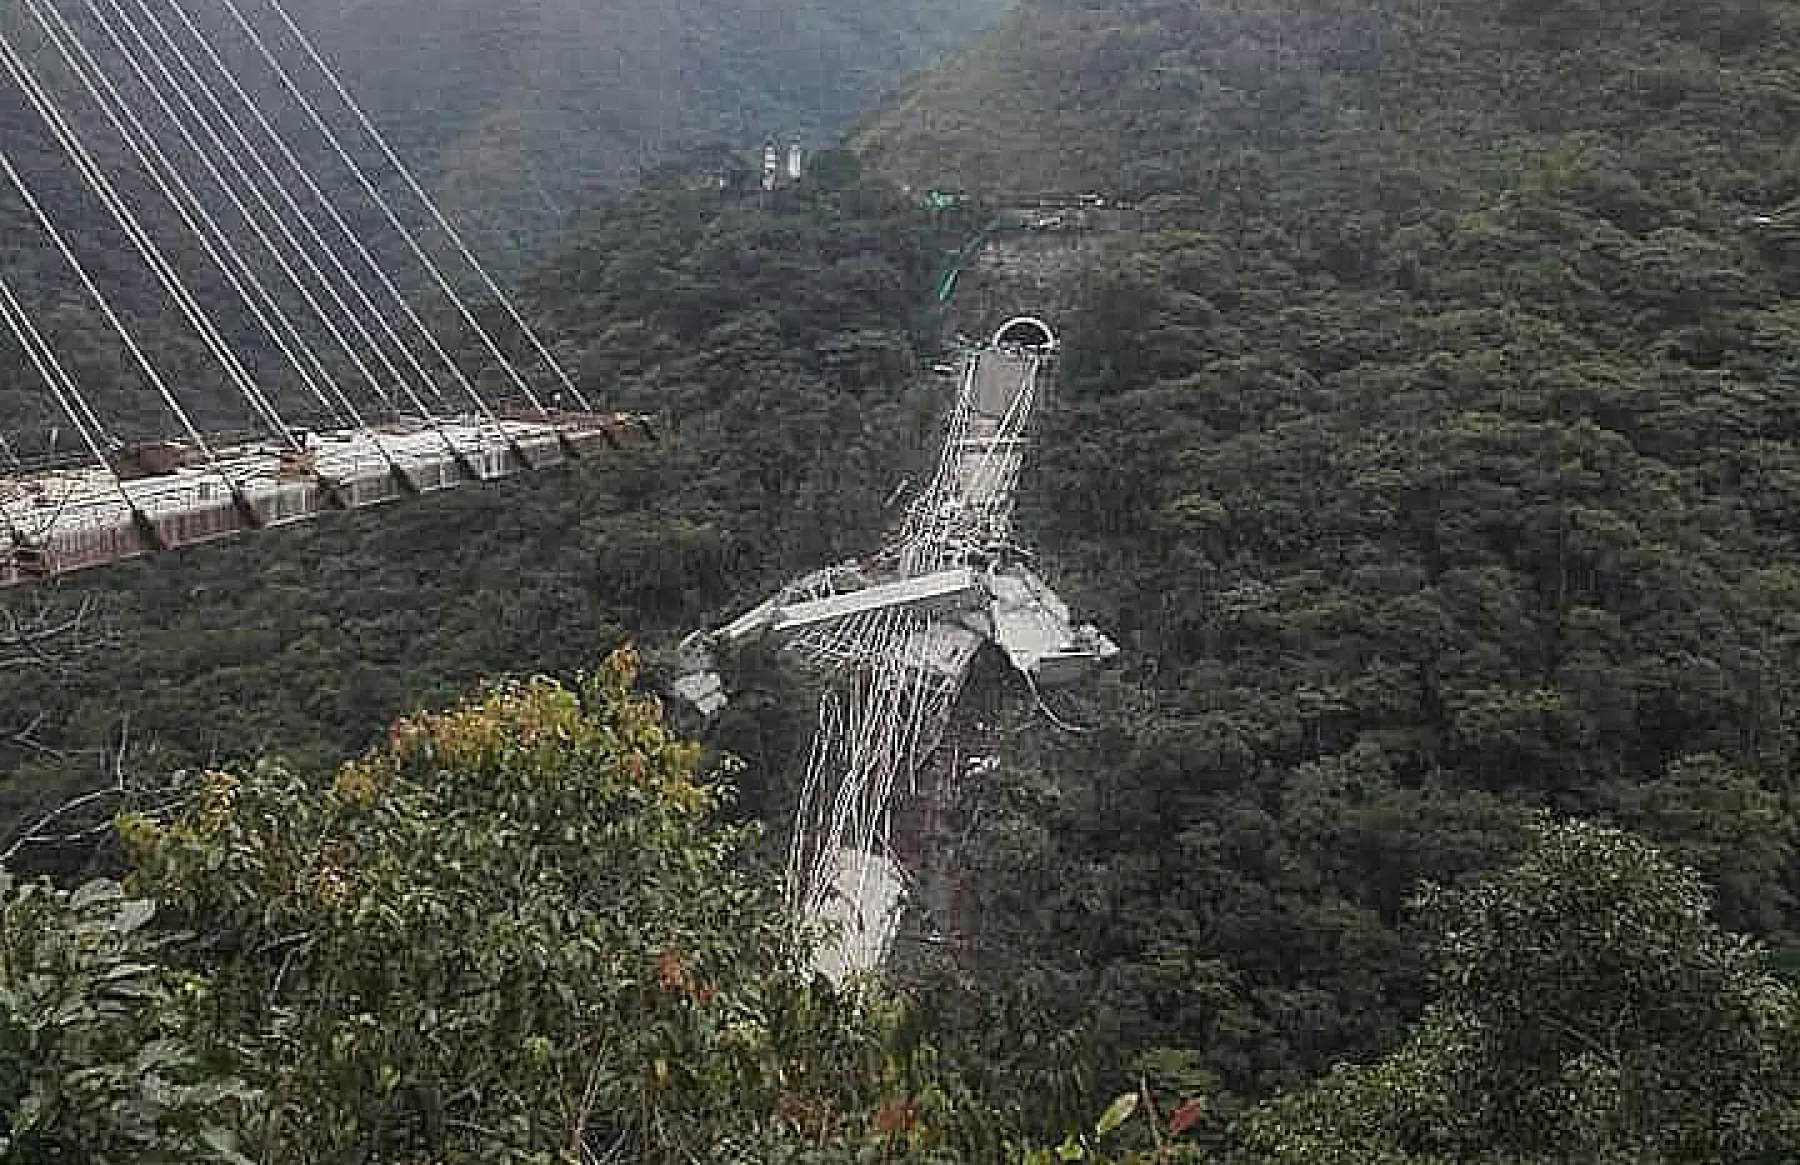 Nueve víctimas confirmadas, eran constructores que cayeron al abismo cuando la estructura se vino abajo en vía Bogotá - Villavicencio.